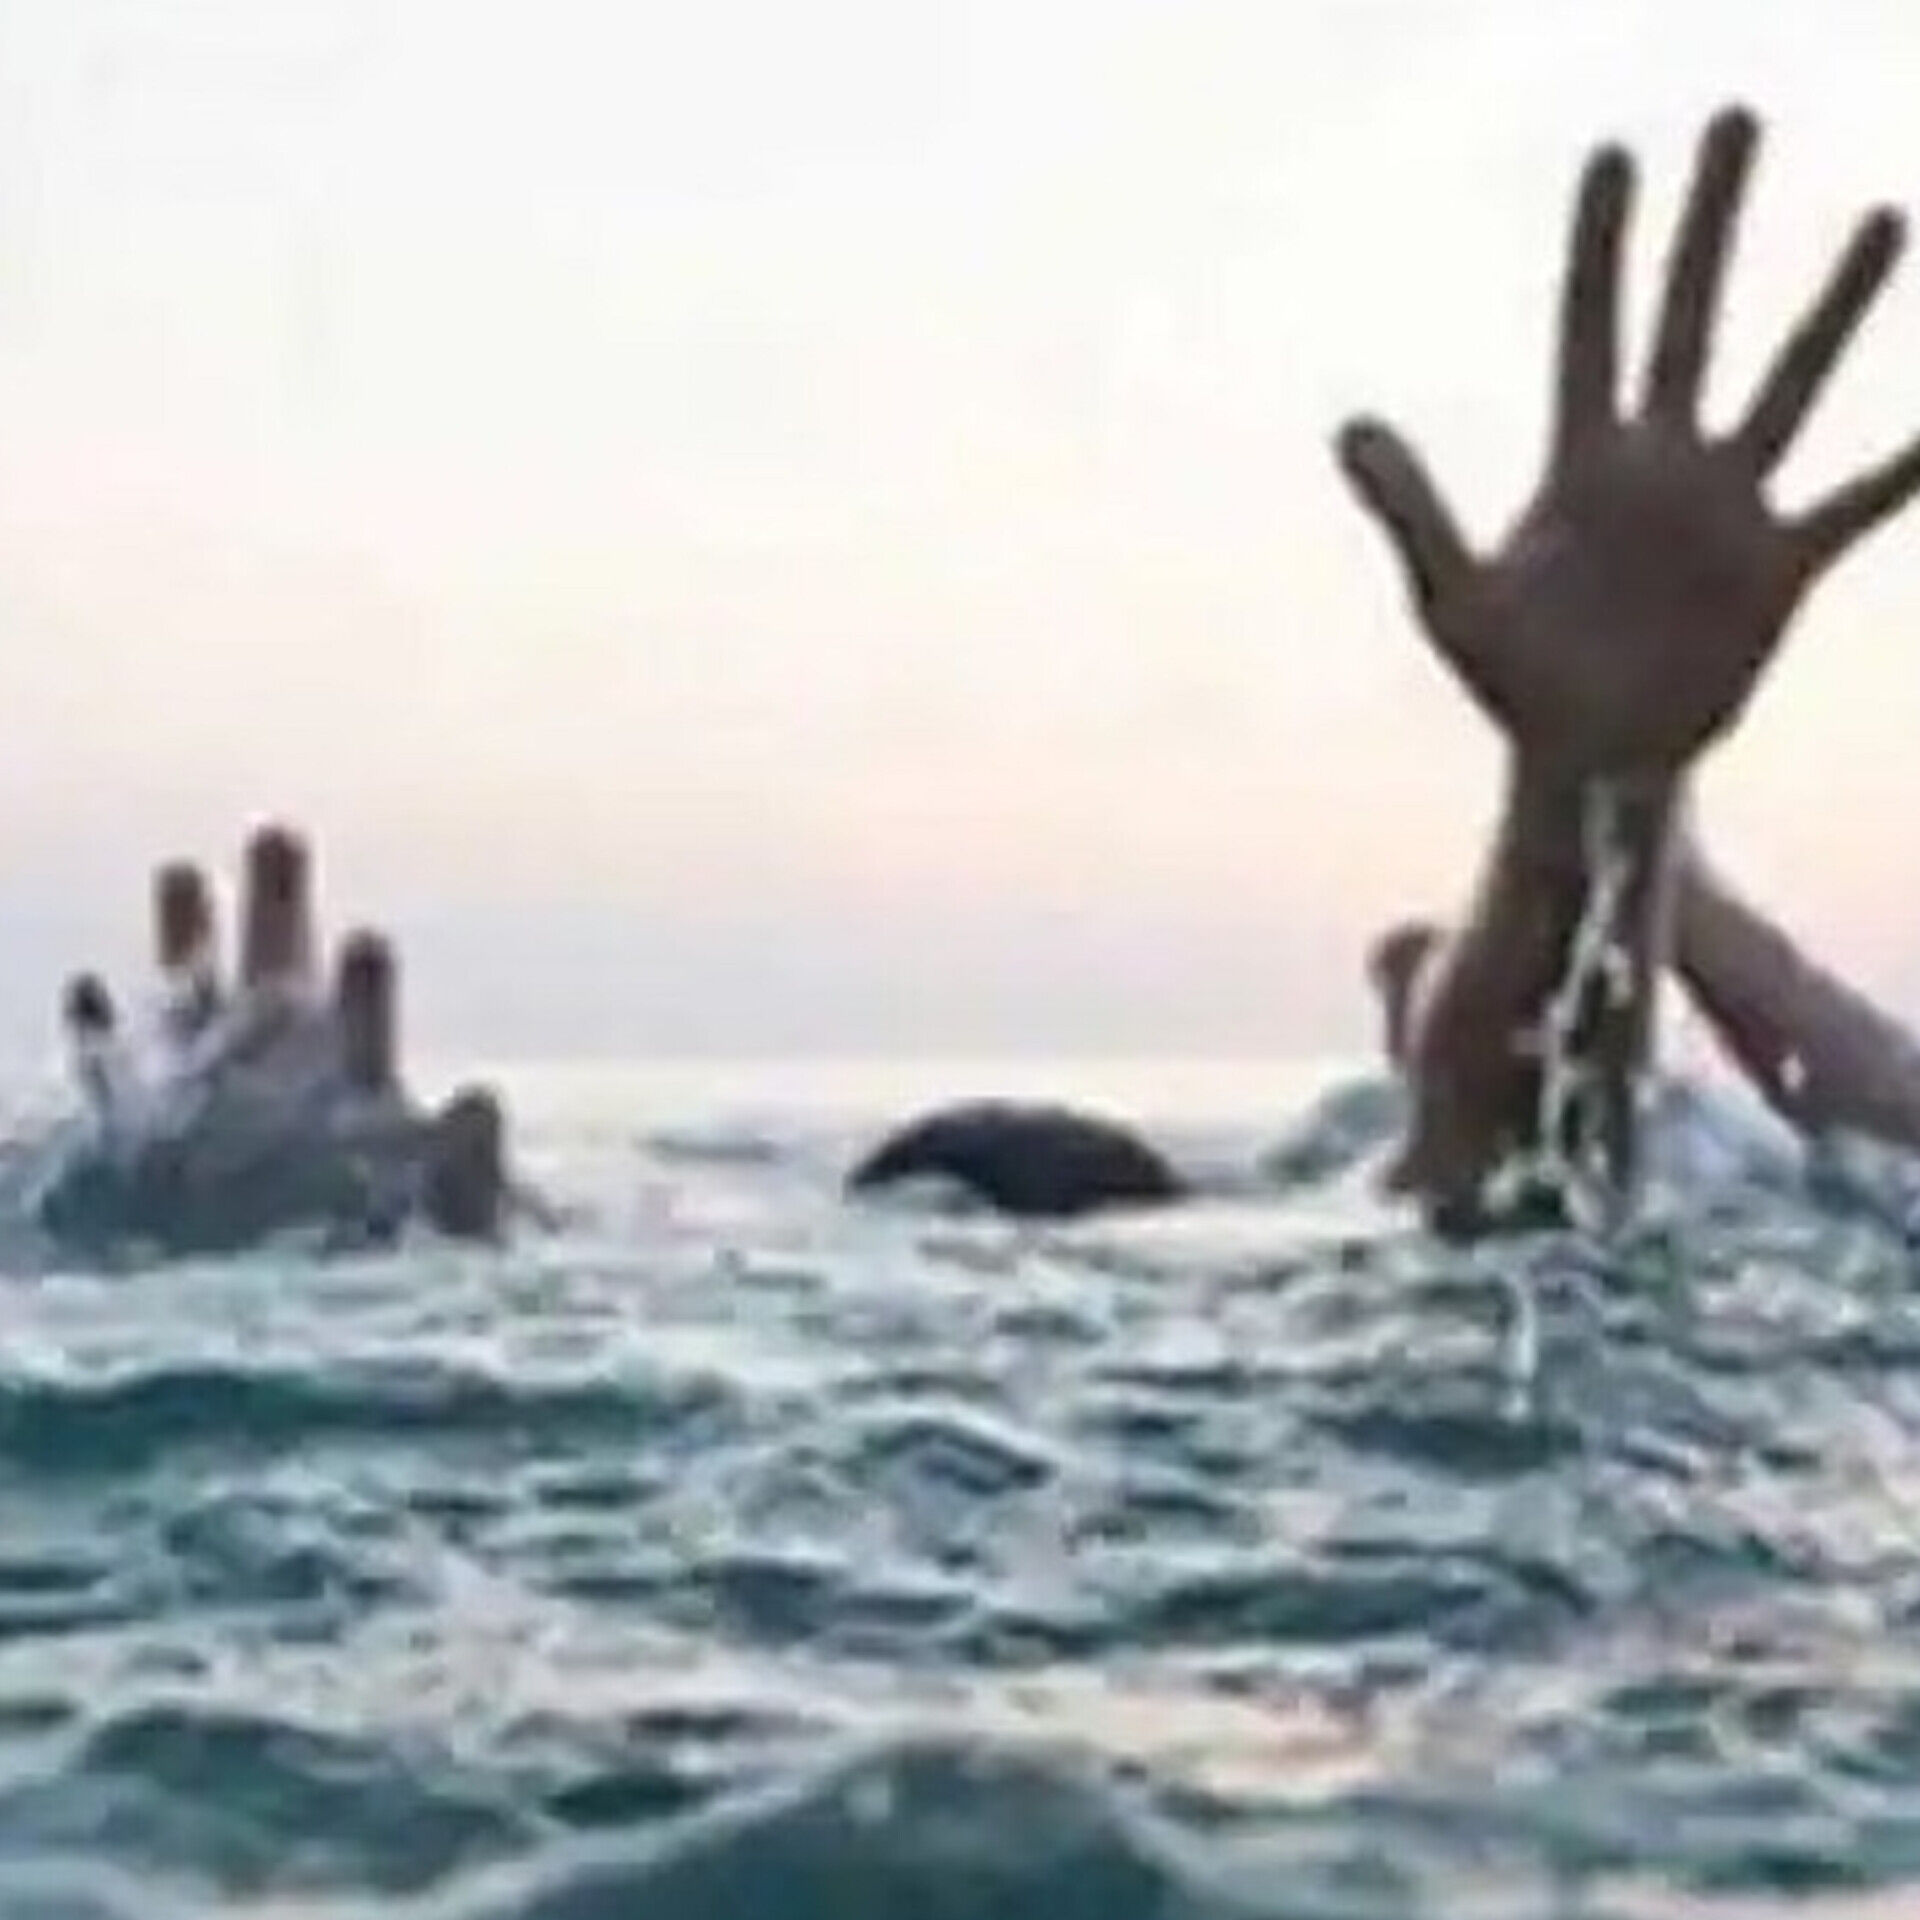 यूपी के शुक्लागंज में गंगा नदी में डूबे पांच बच्चे, चार की मौत, एक की हालत गंभीर